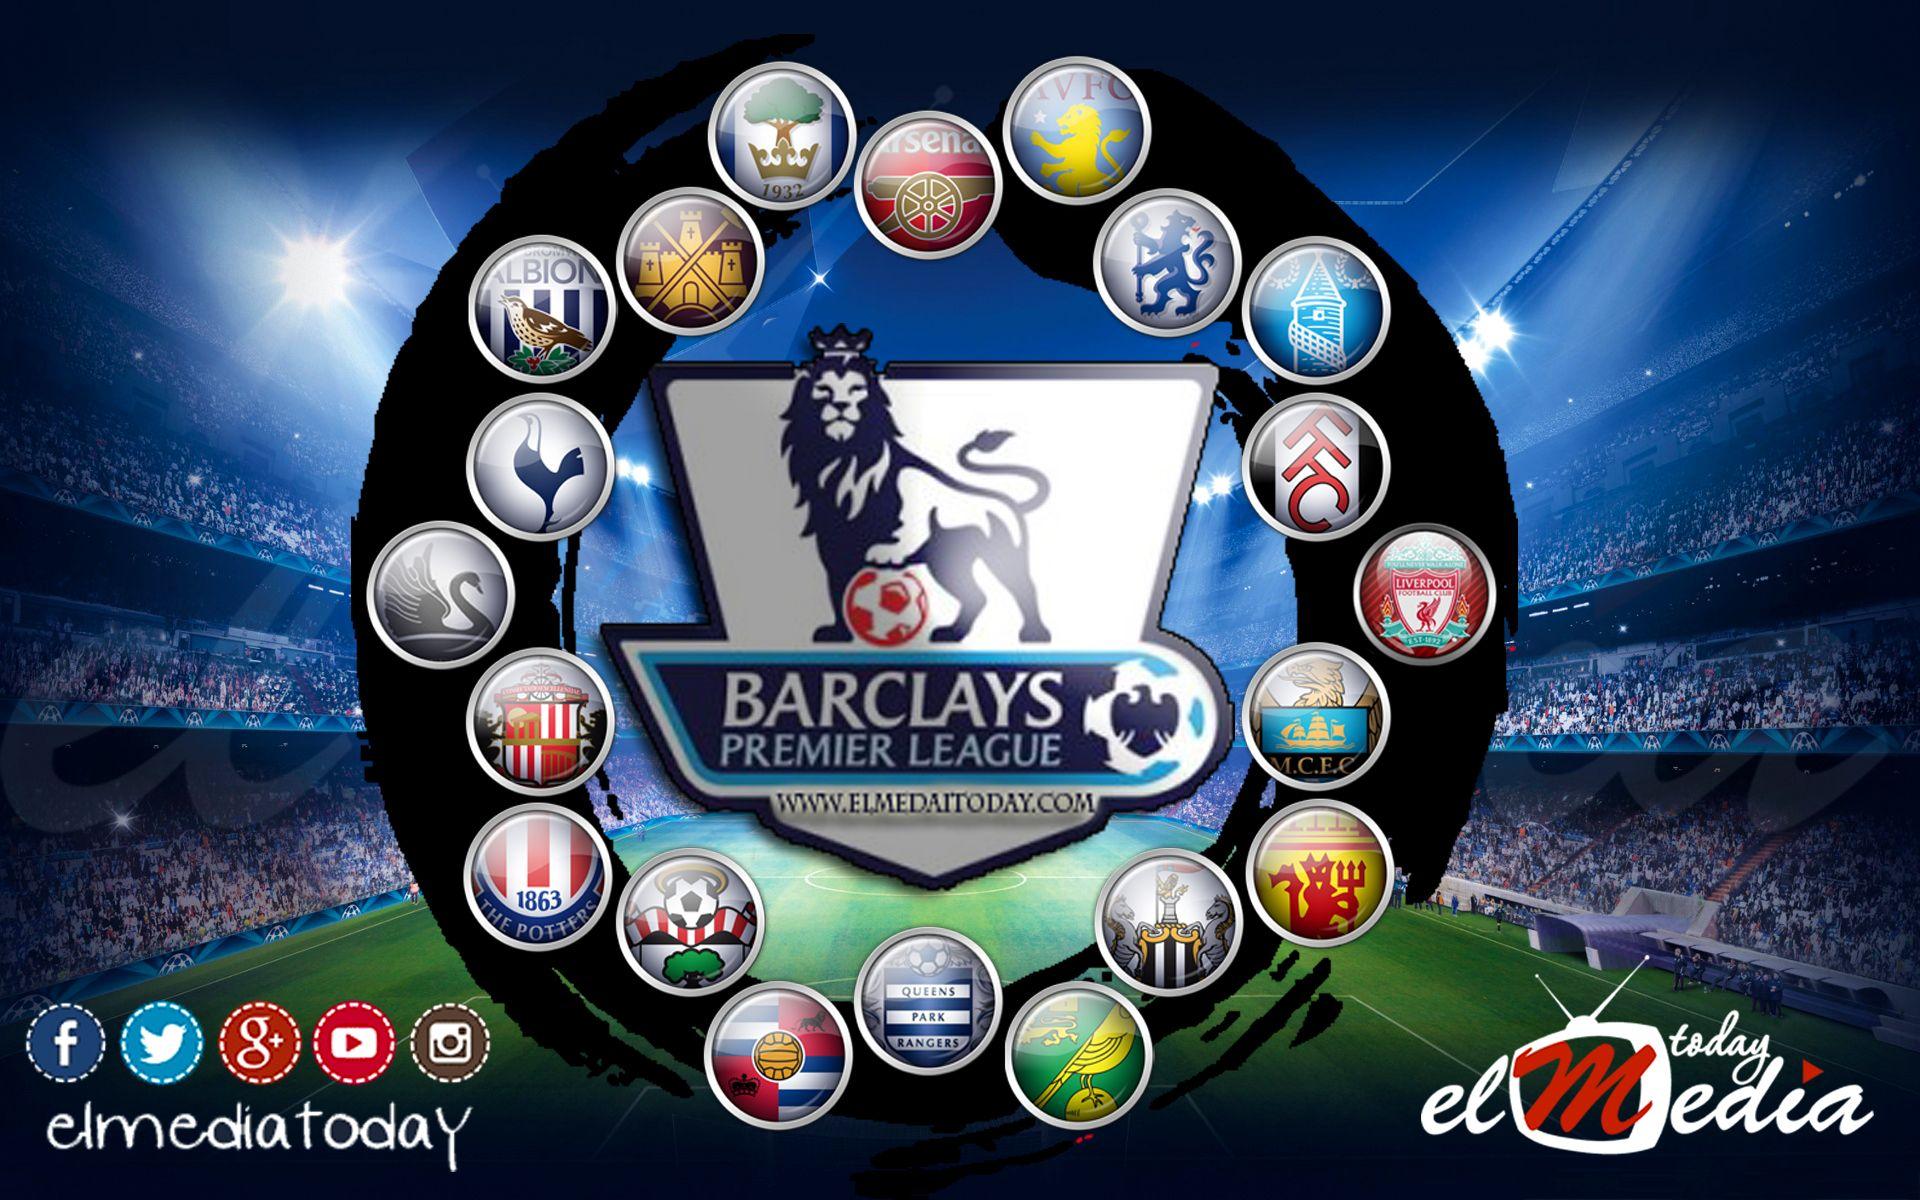 Спортс лига. Барклайс премьер лига. Английская премьер лига Barclays. Primer Liga. Английская премьер лига логотип.